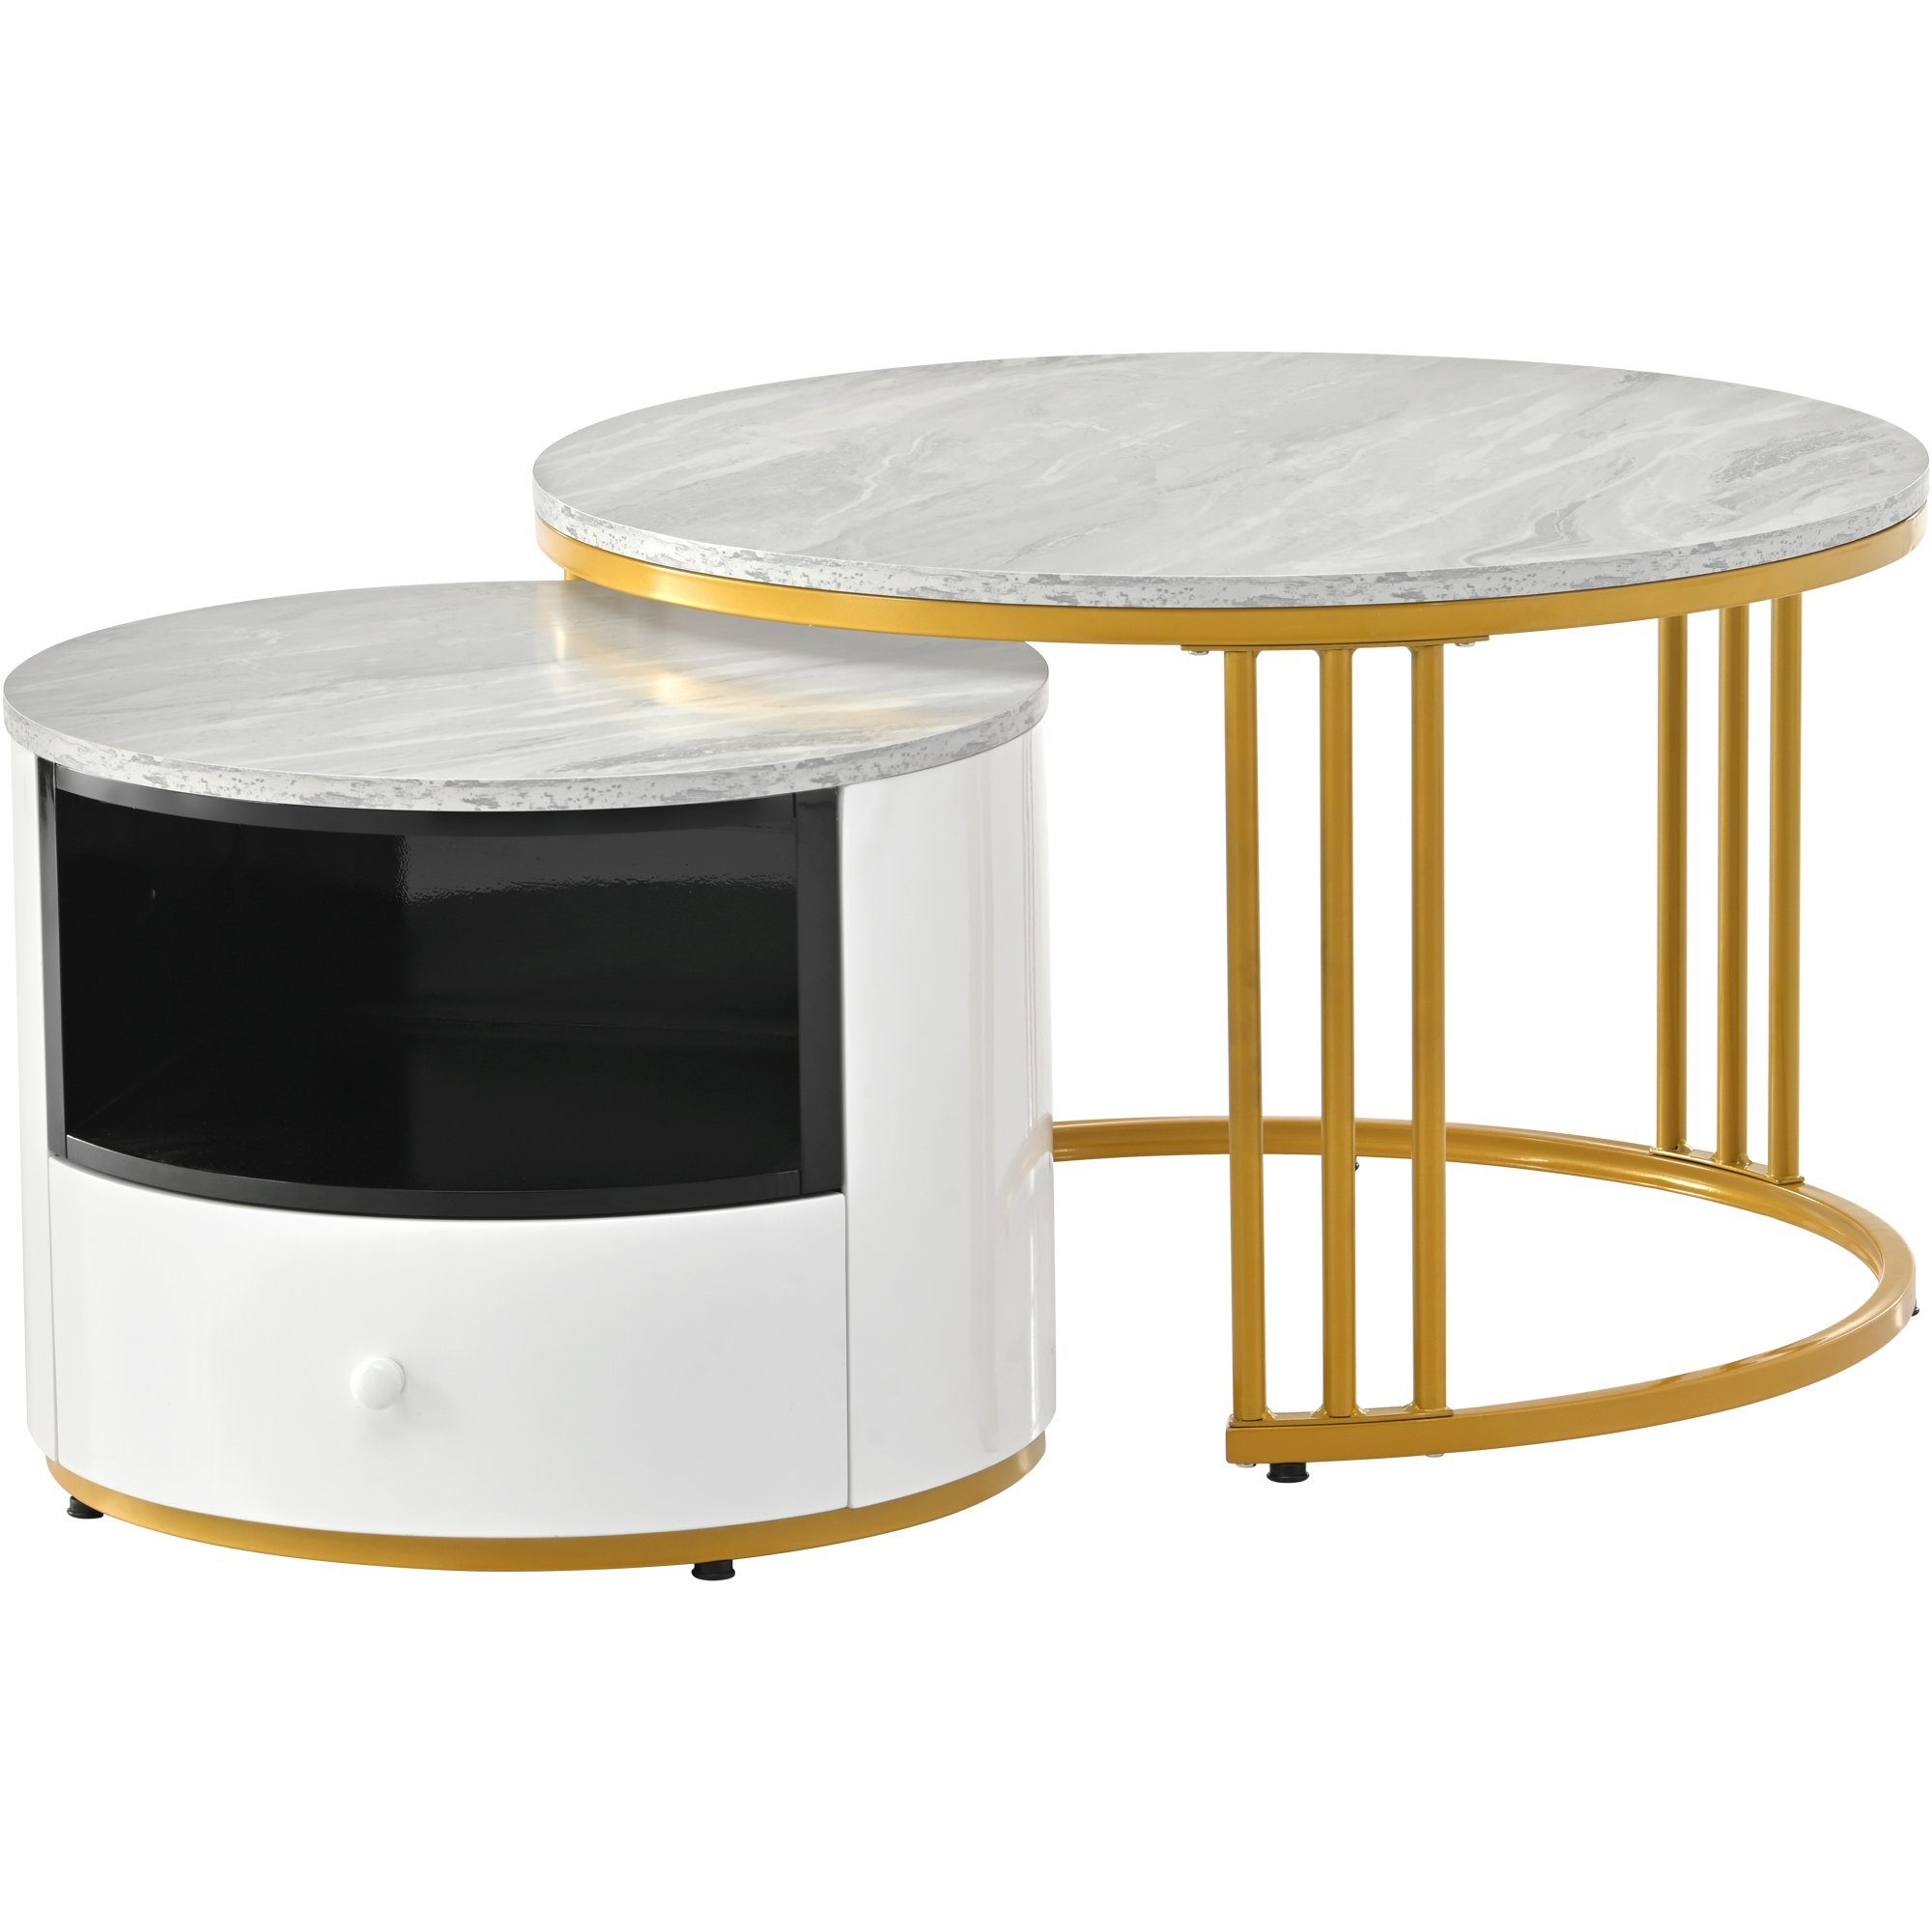 Metallgestell Satztische Set Beistelltisch, Weiß Gold Marmor Wohnzimmer, Modern Rund mit Celya Optik Tisch Couchtisch fürs Wohnzimmer 2er Rund grau Weiss